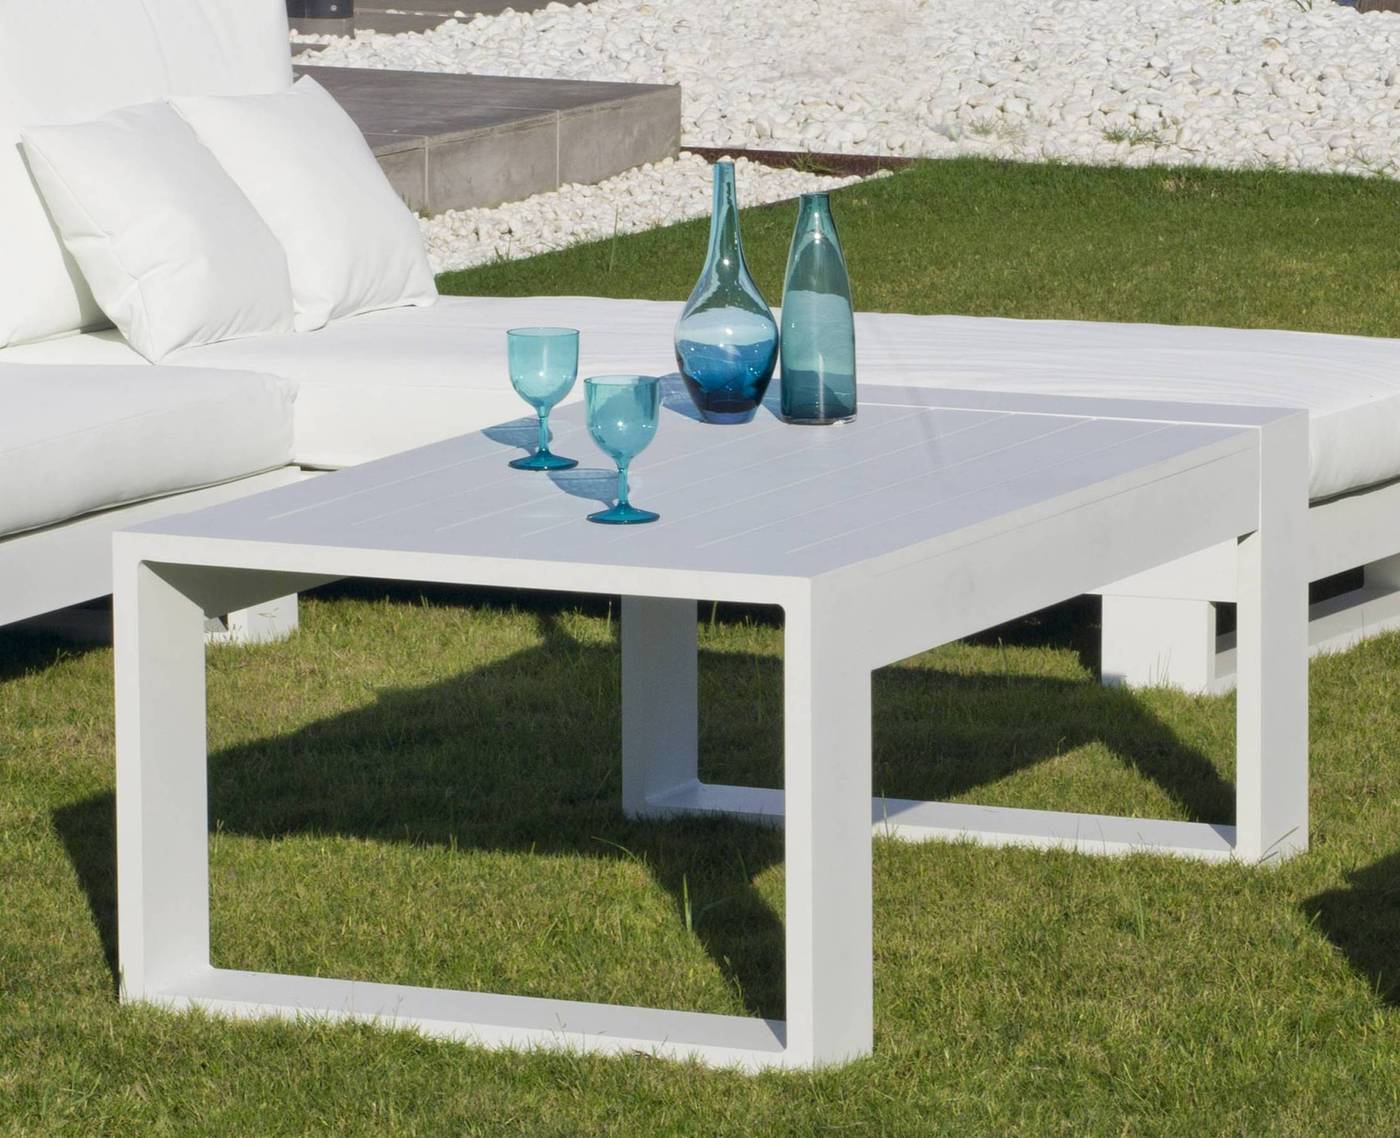 Set Aluminio Luxe Cartago-10 - Conjunto lujoso y robusto de aluminio: 1 sofá de 3 plazas + 2 sillones + 2 reposapiés + 1 mesa de centro + cojines.